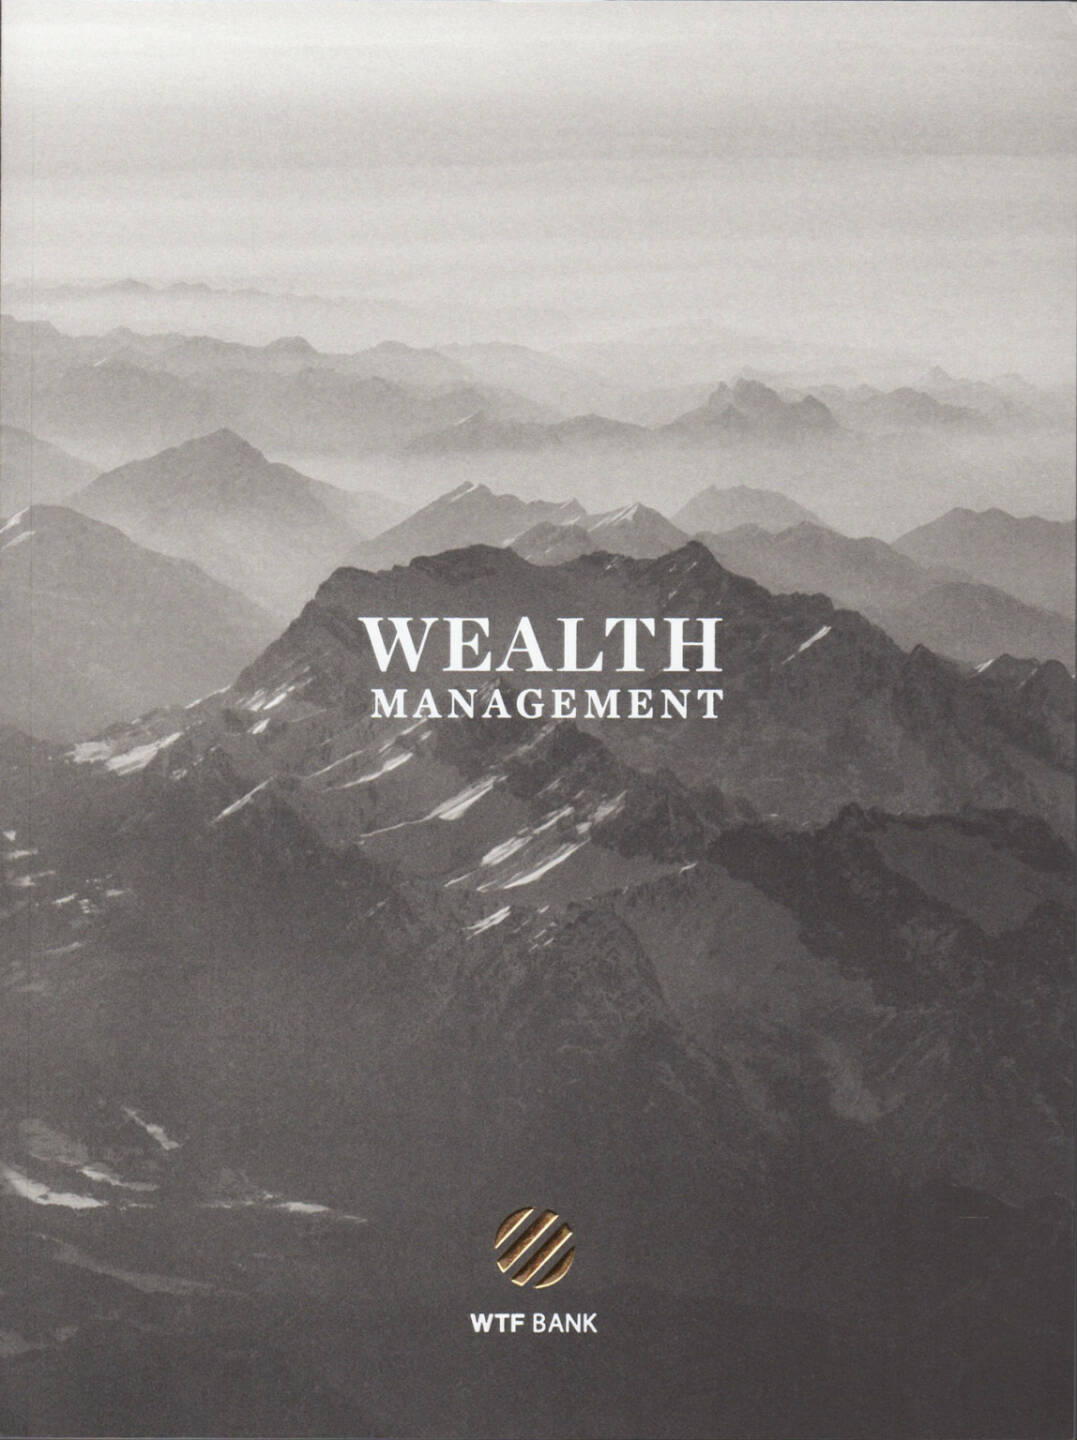 Carlos Spottorno - Wealth Management, Phree / RM Verlag 2015, Cover - http://josefchladek.com/book/carlos_spottorno_-_wealth_management